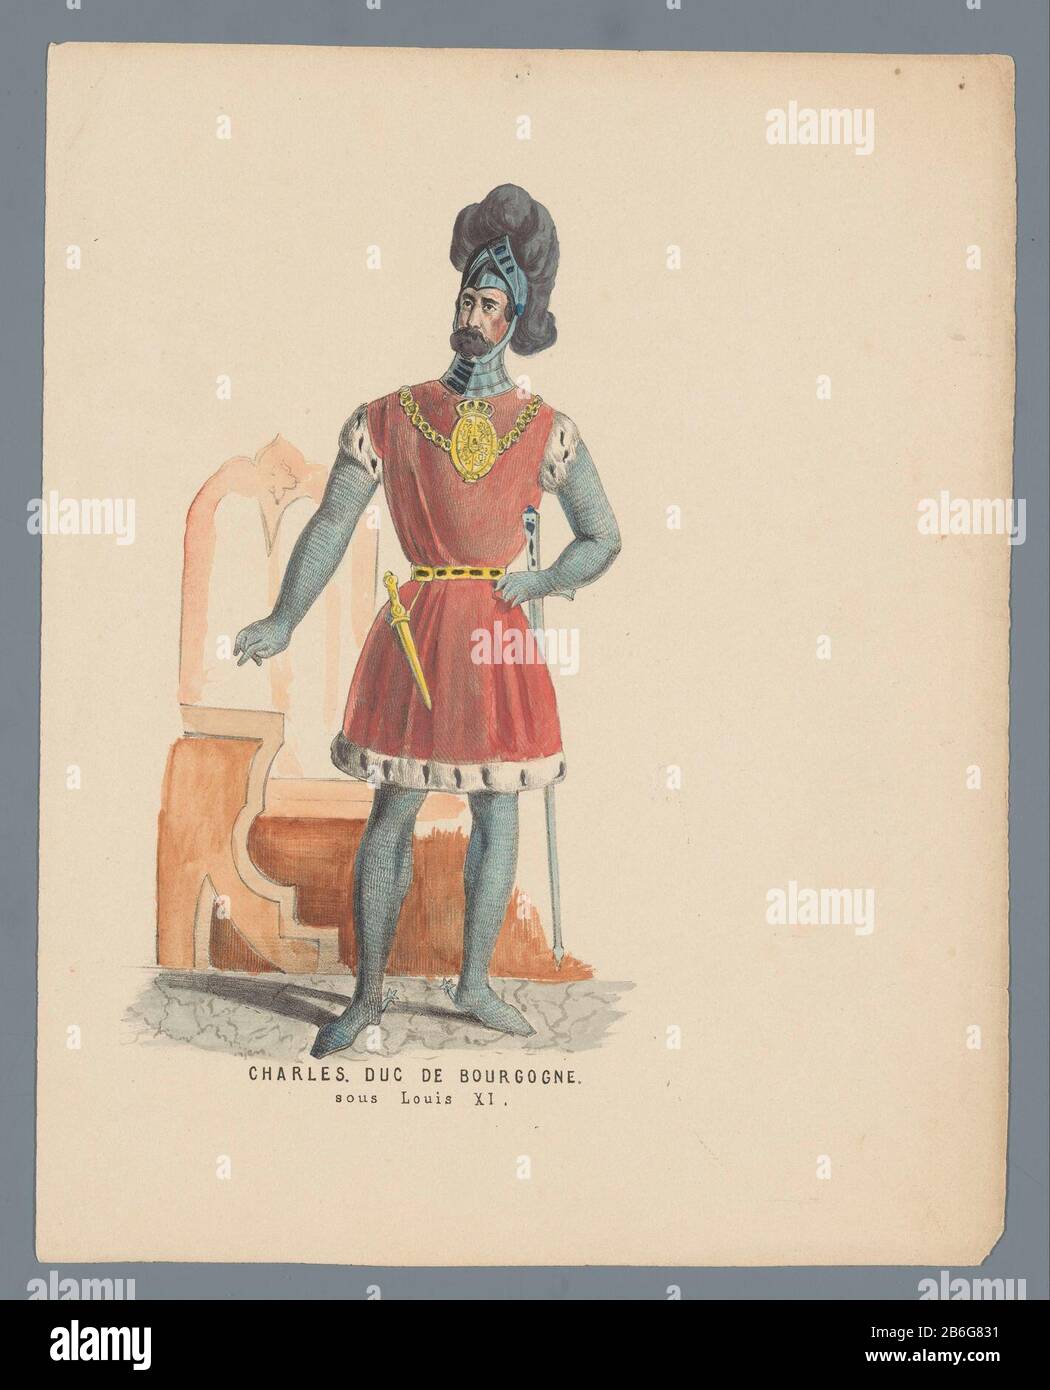 Charles Duc de Bourgogne sous Louis XI (titre sur objet) Homme en costume  historique comme Charles le Bold, duc de Bourgogne, sous Louis XI  Présentation ajoutée à la tôle sur la boule